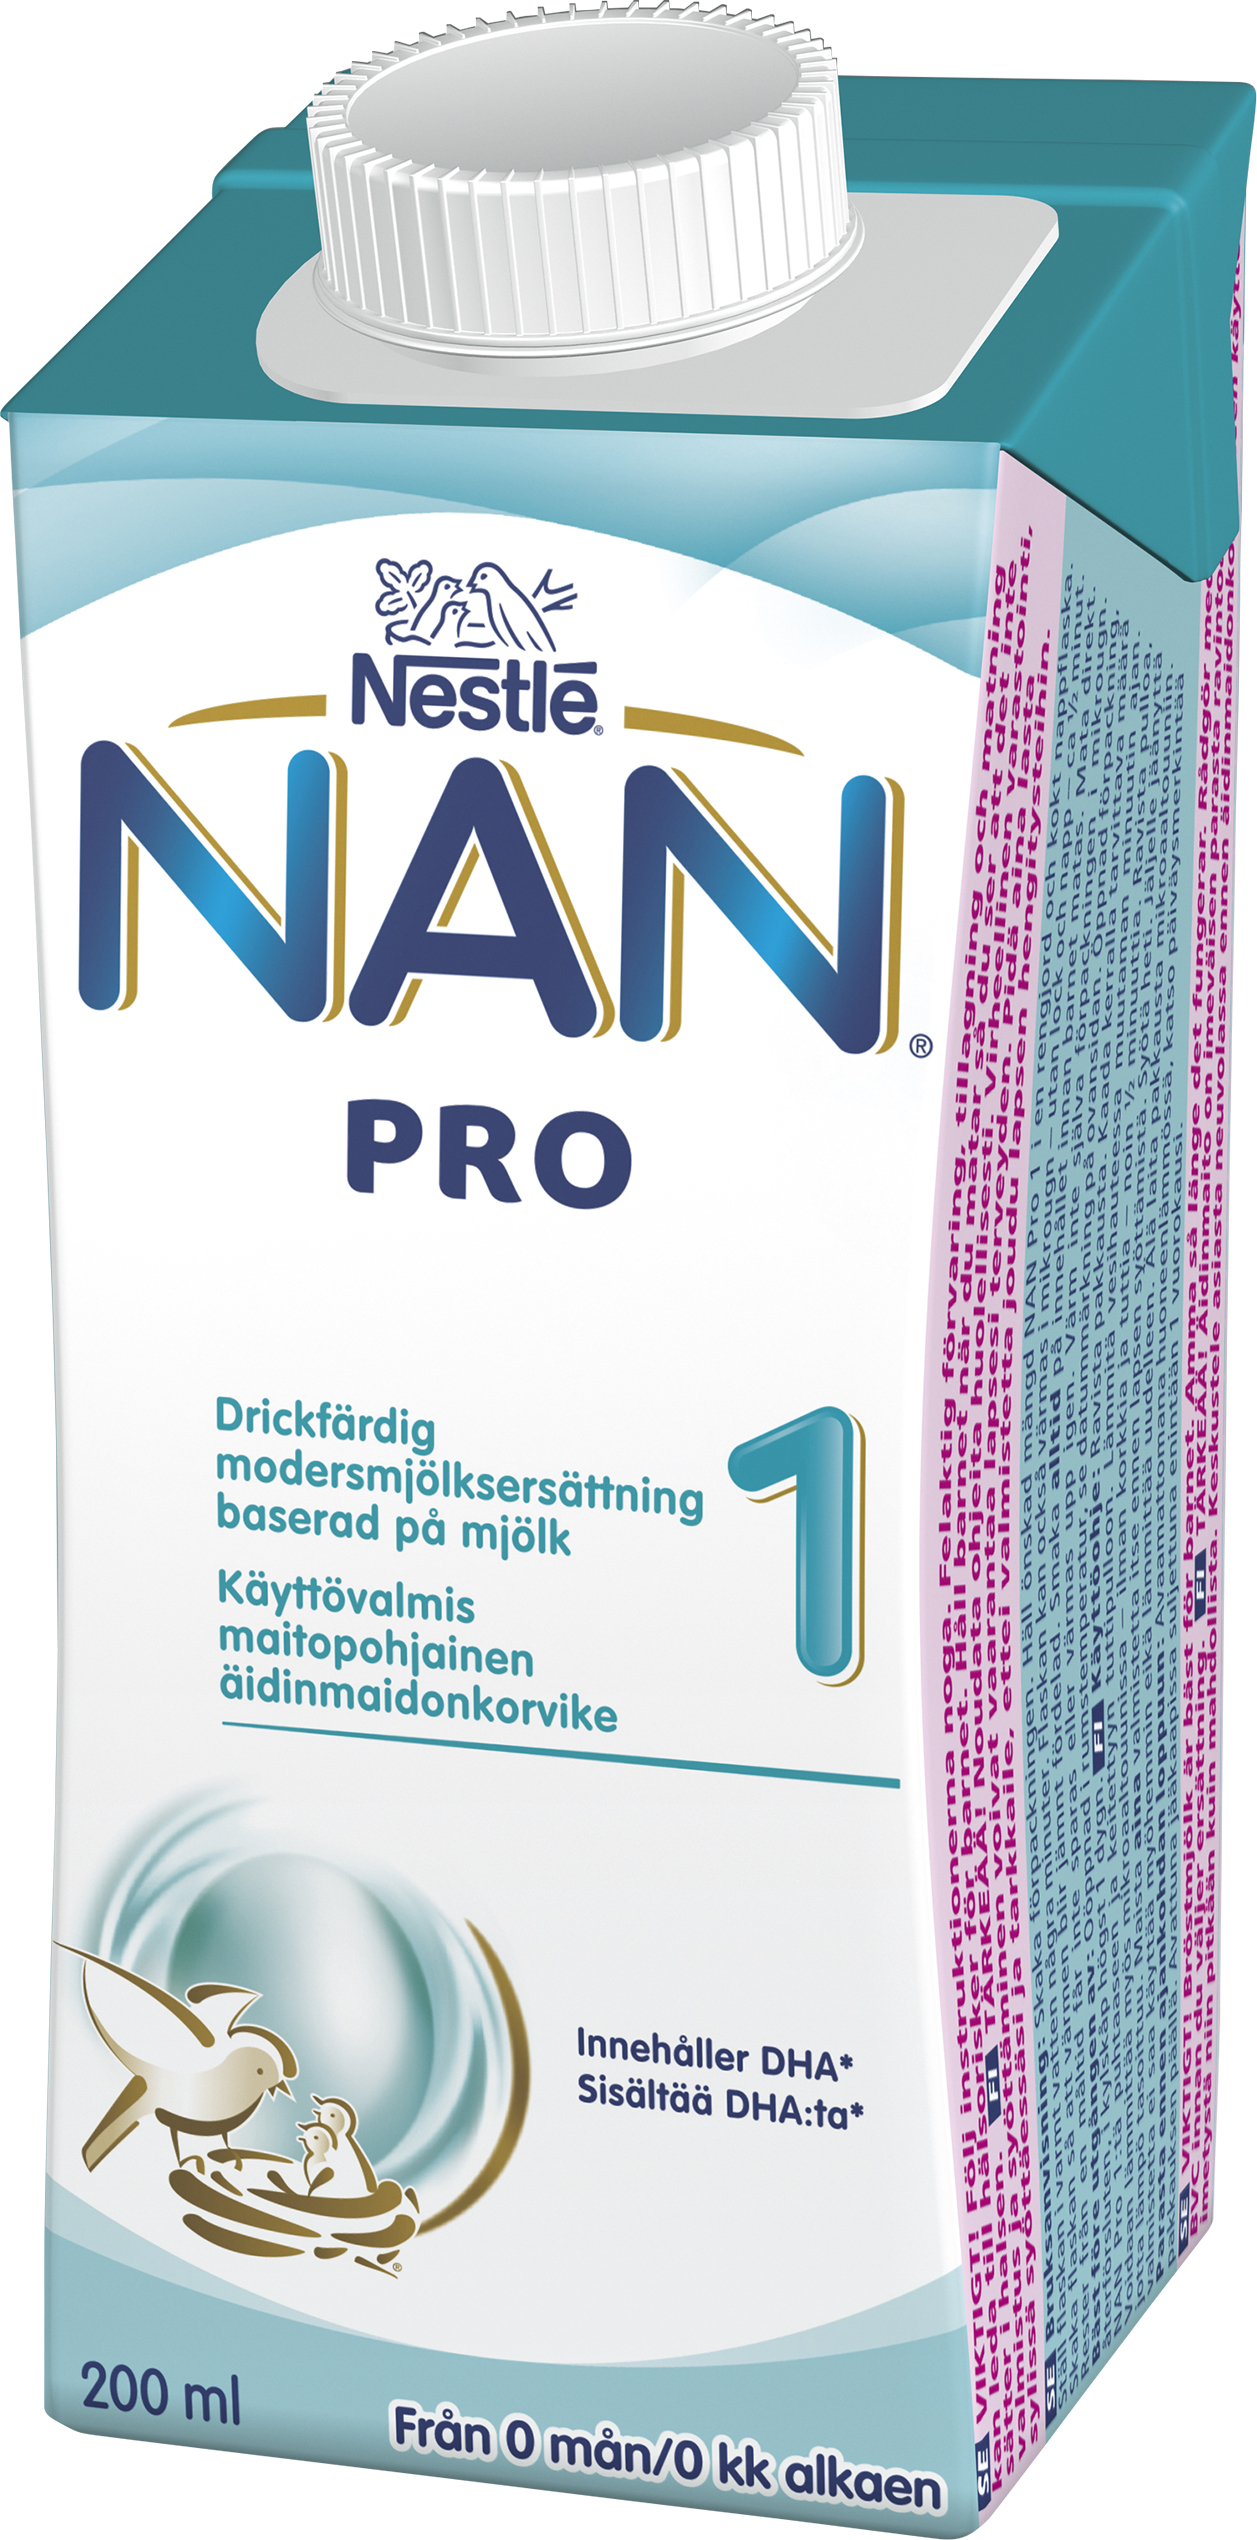 Nestlé NAN PRO 1 Drickfärdig Modersmjölksersättning 200 ml